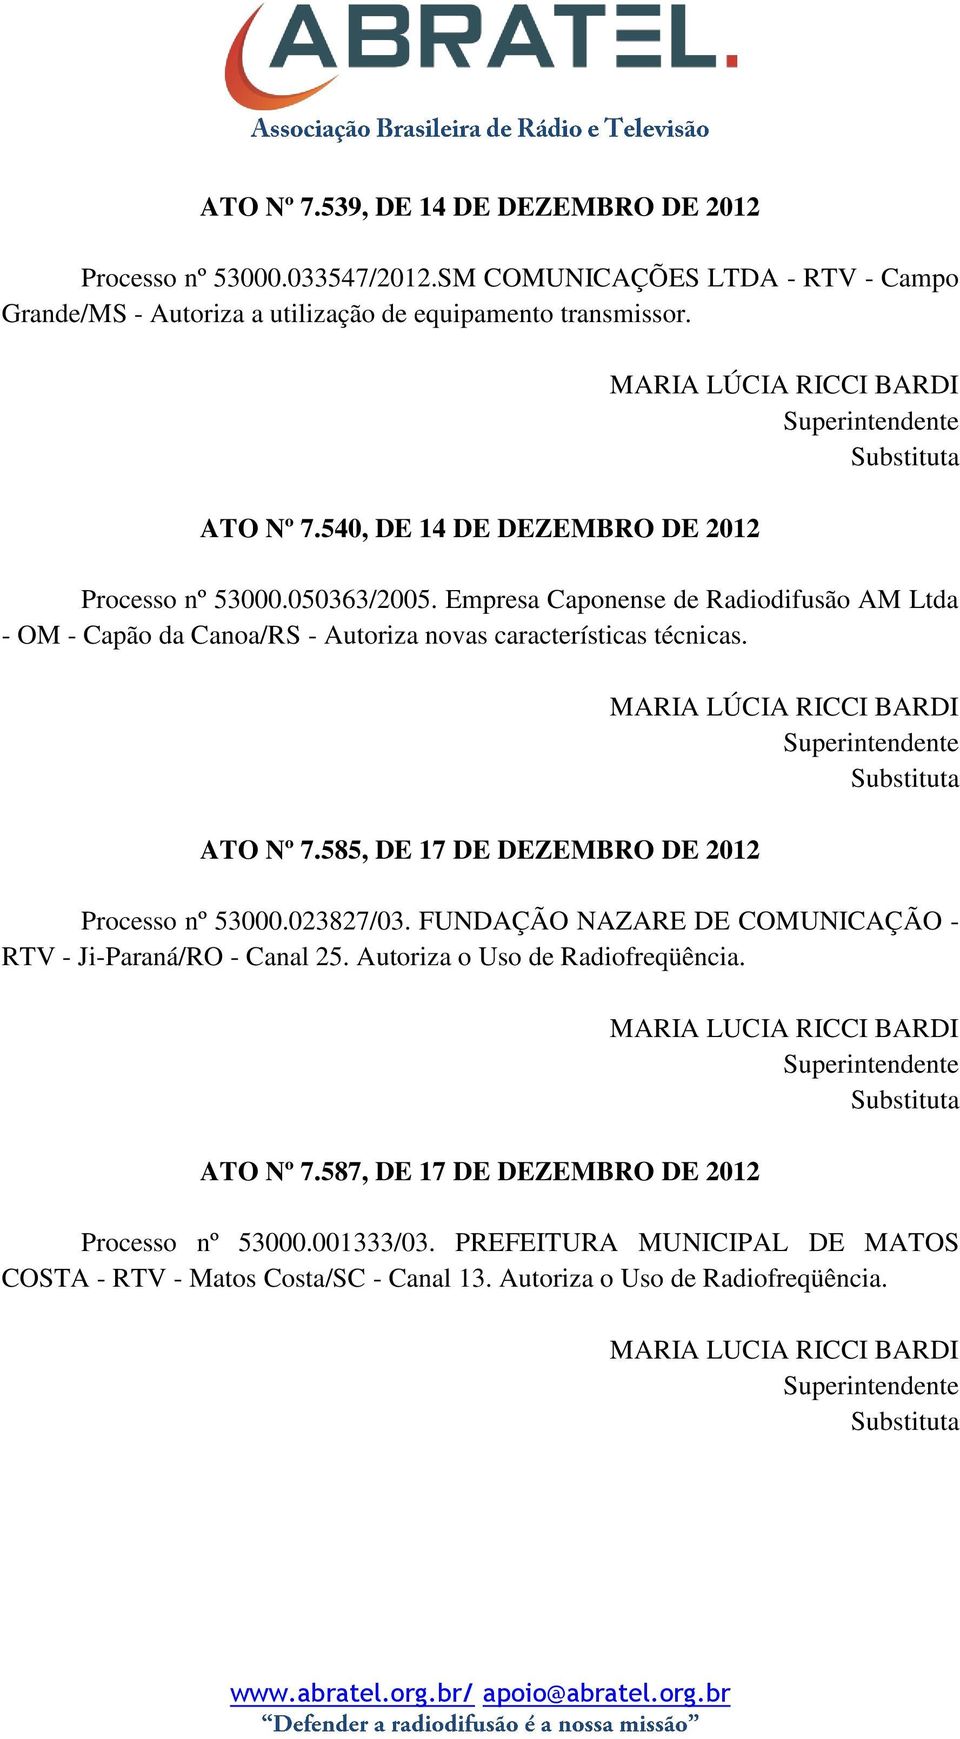 ATO Nº 7.585, DE 17 DE DEZEMBRO DE 2012 MARIA LÚCIA RICCI BARDI Processo nº 53000.023827/03. FUNDAÇÃO NAZARE DE COMUNICAÇÃO - RTV - Ji-Paraná/RO - Canal 25. Autoriza o Uso de Radiofreqüência.